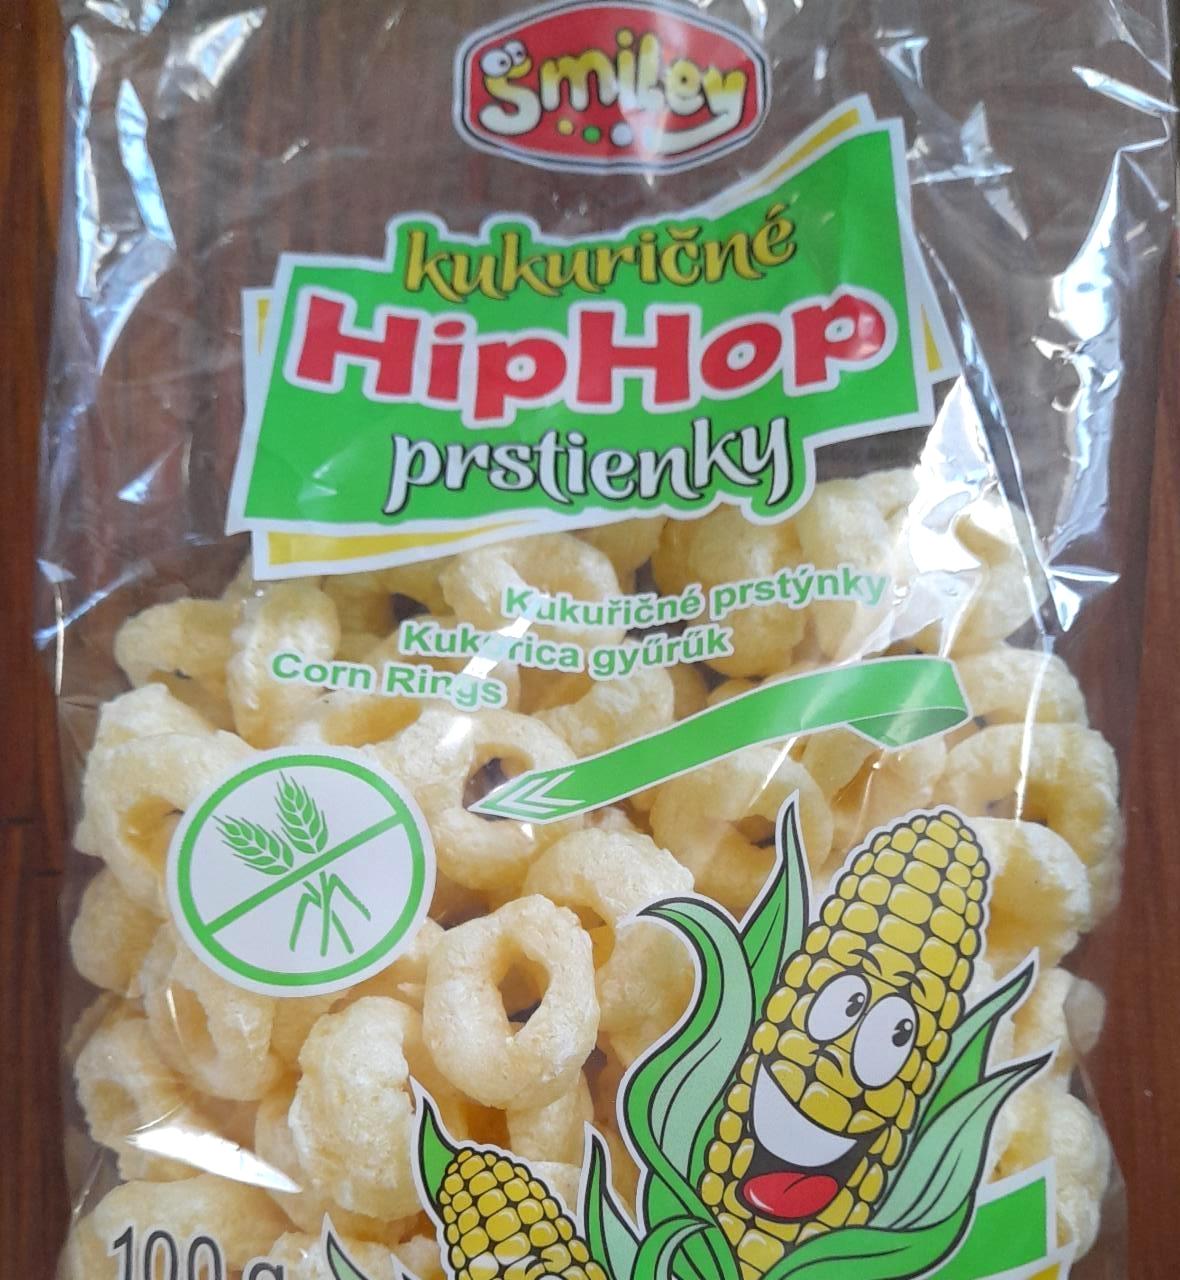 Képek - Hiphop prstienky kukuričné Smiley